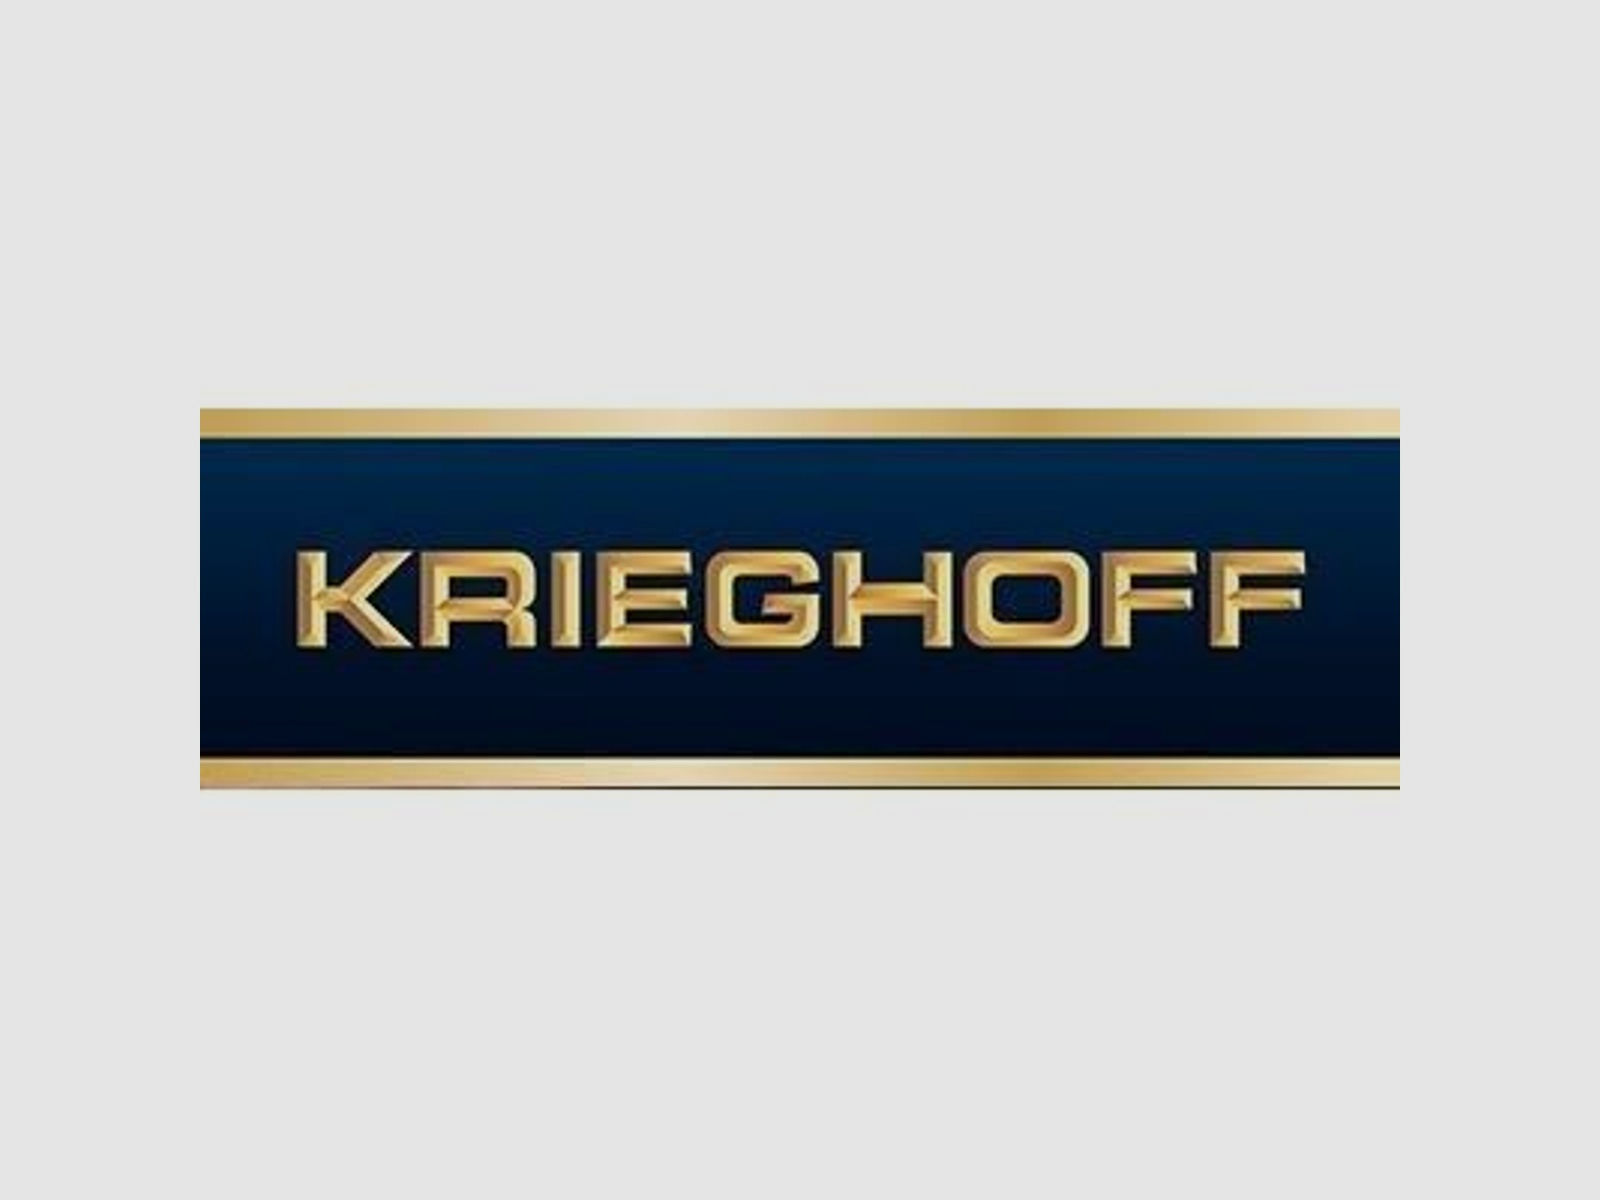 KRIEGHOFF Mehrpreis für Neuwaffe Schaftholz #4 - Mehrpreis Optima-Ultra-Classic-Hubertus